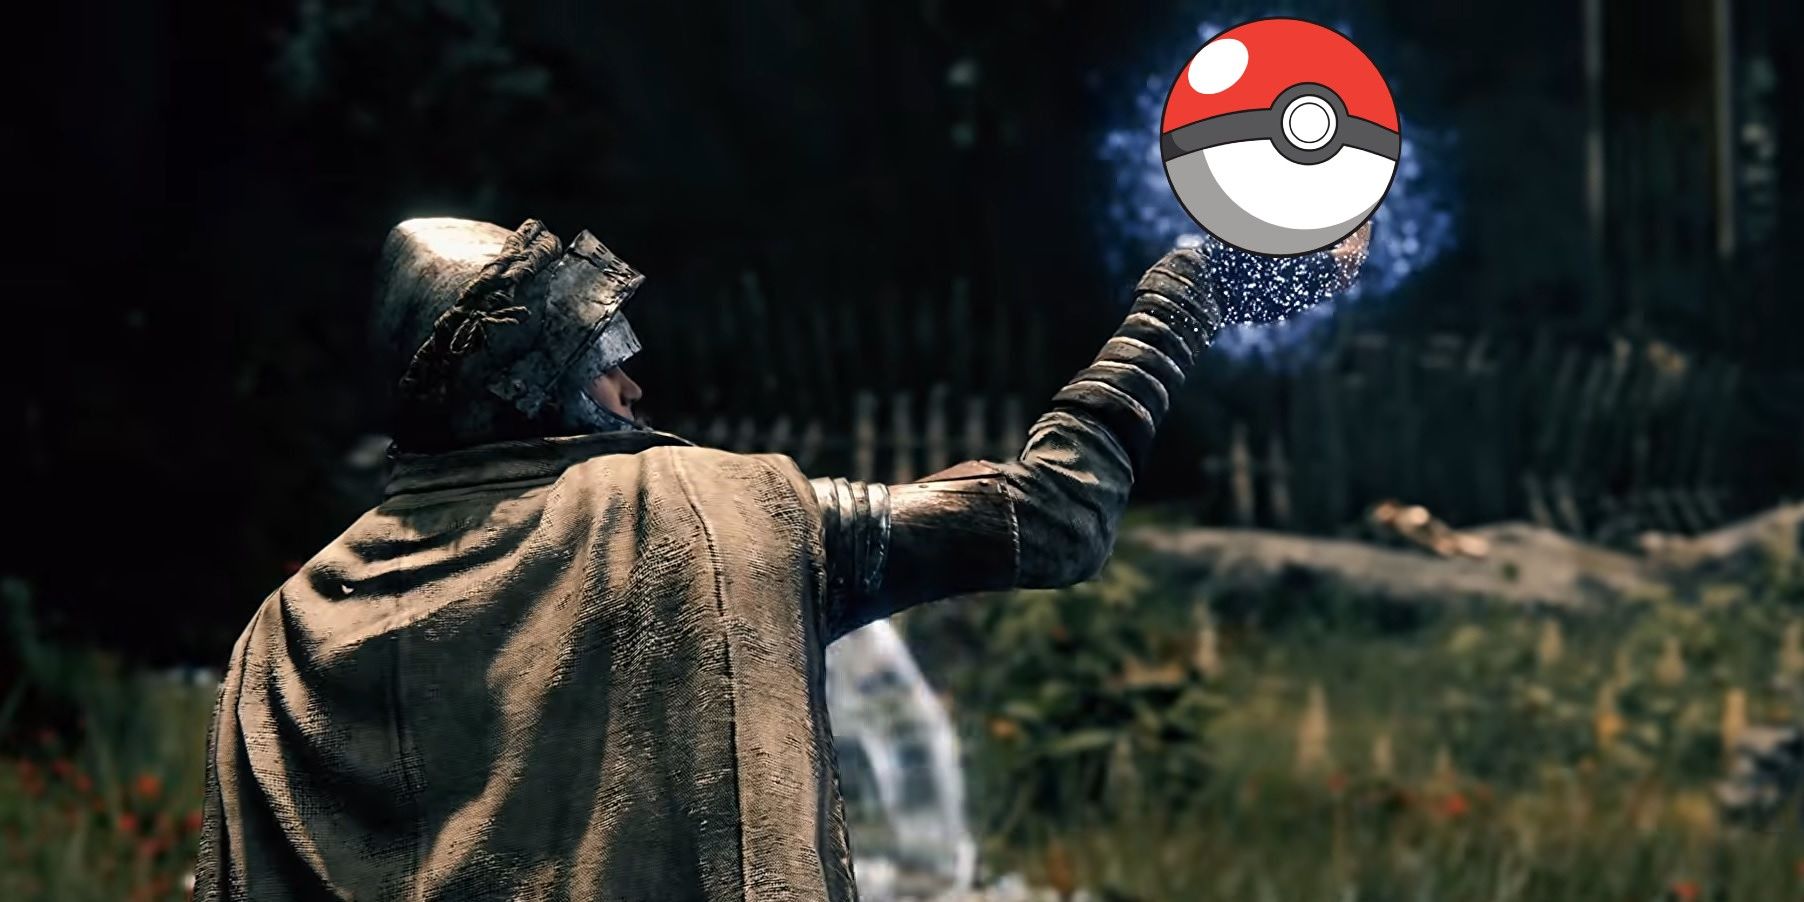 Pokémon Become Elden Ring Enemies In Impressive Fan Art